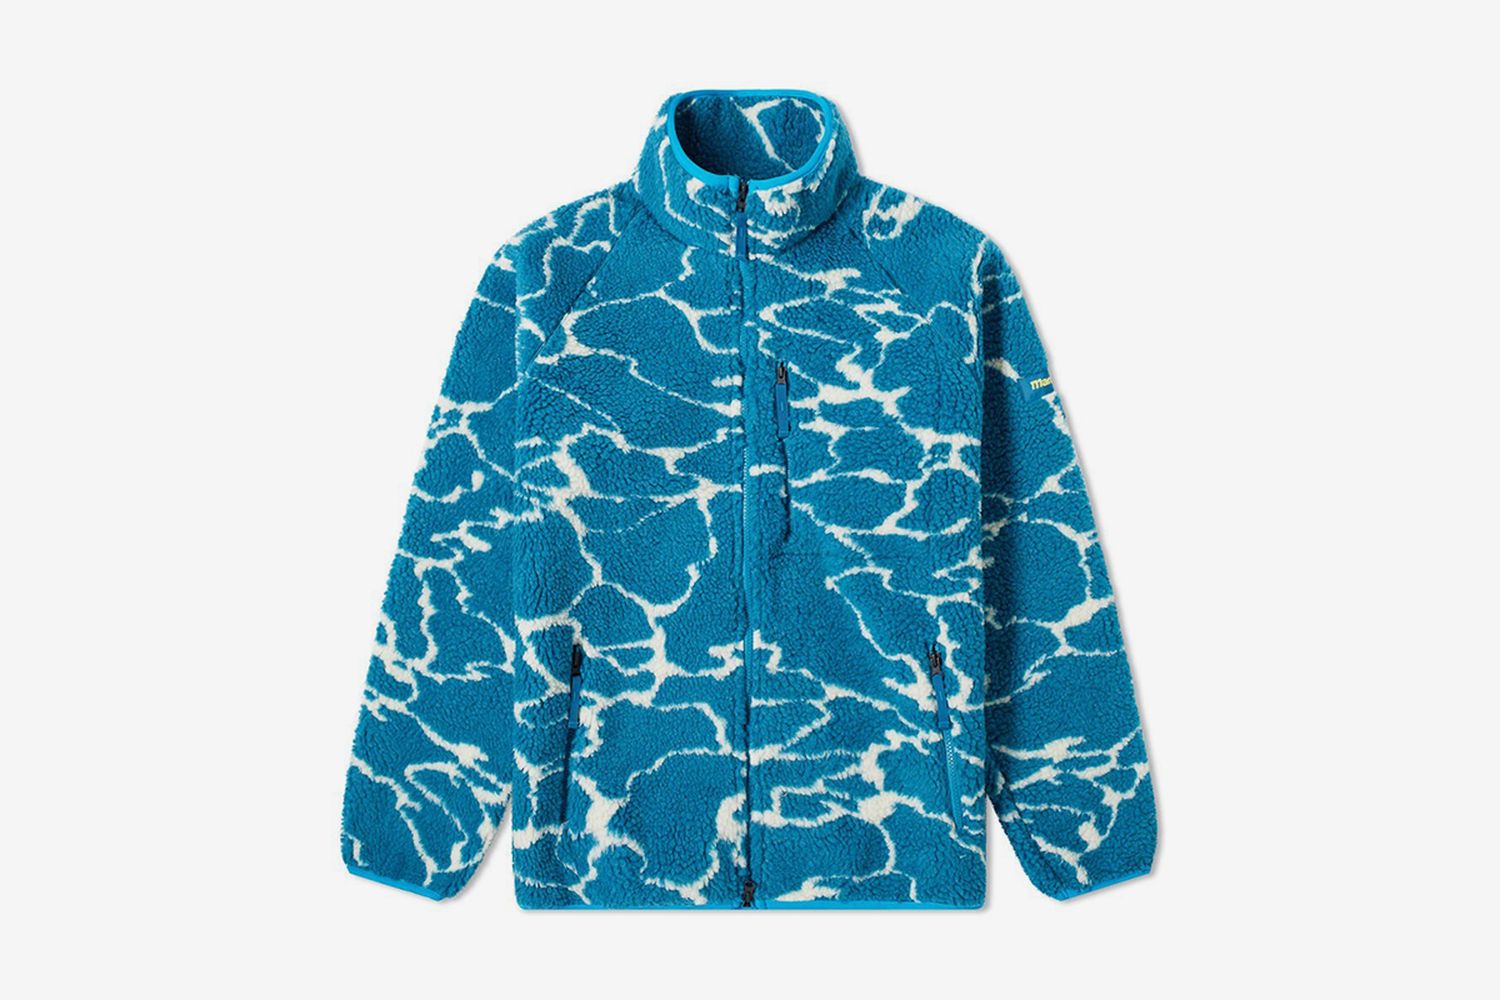 Lithium Fleece Jacket